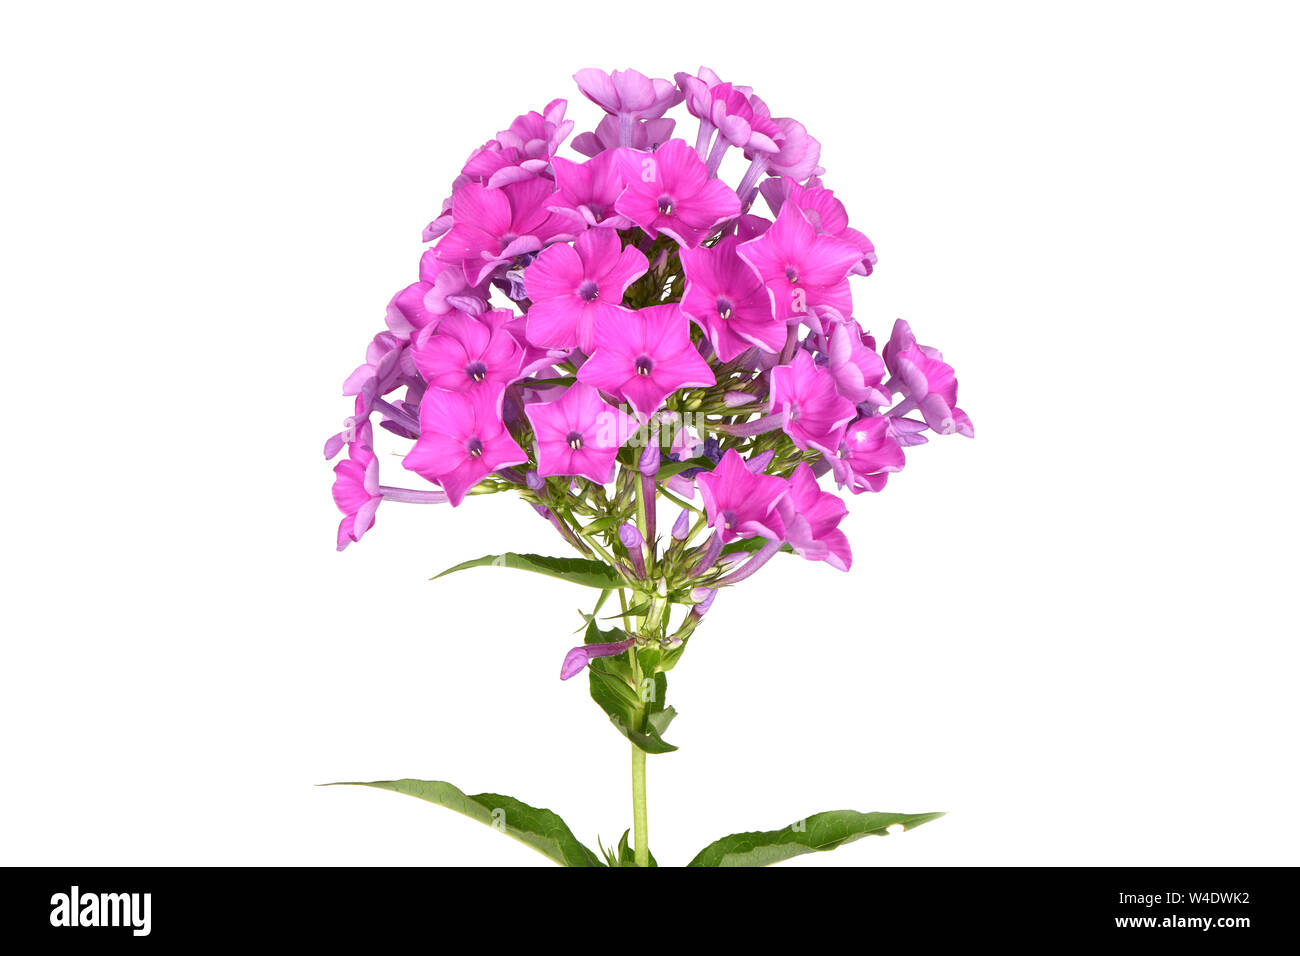 Fleur violette de phlox (Phlox douglasii) Plante, isolé sur un fond blanc.  Photo haute résolution. Profondeur de champ complet Photo Stock - Alamy